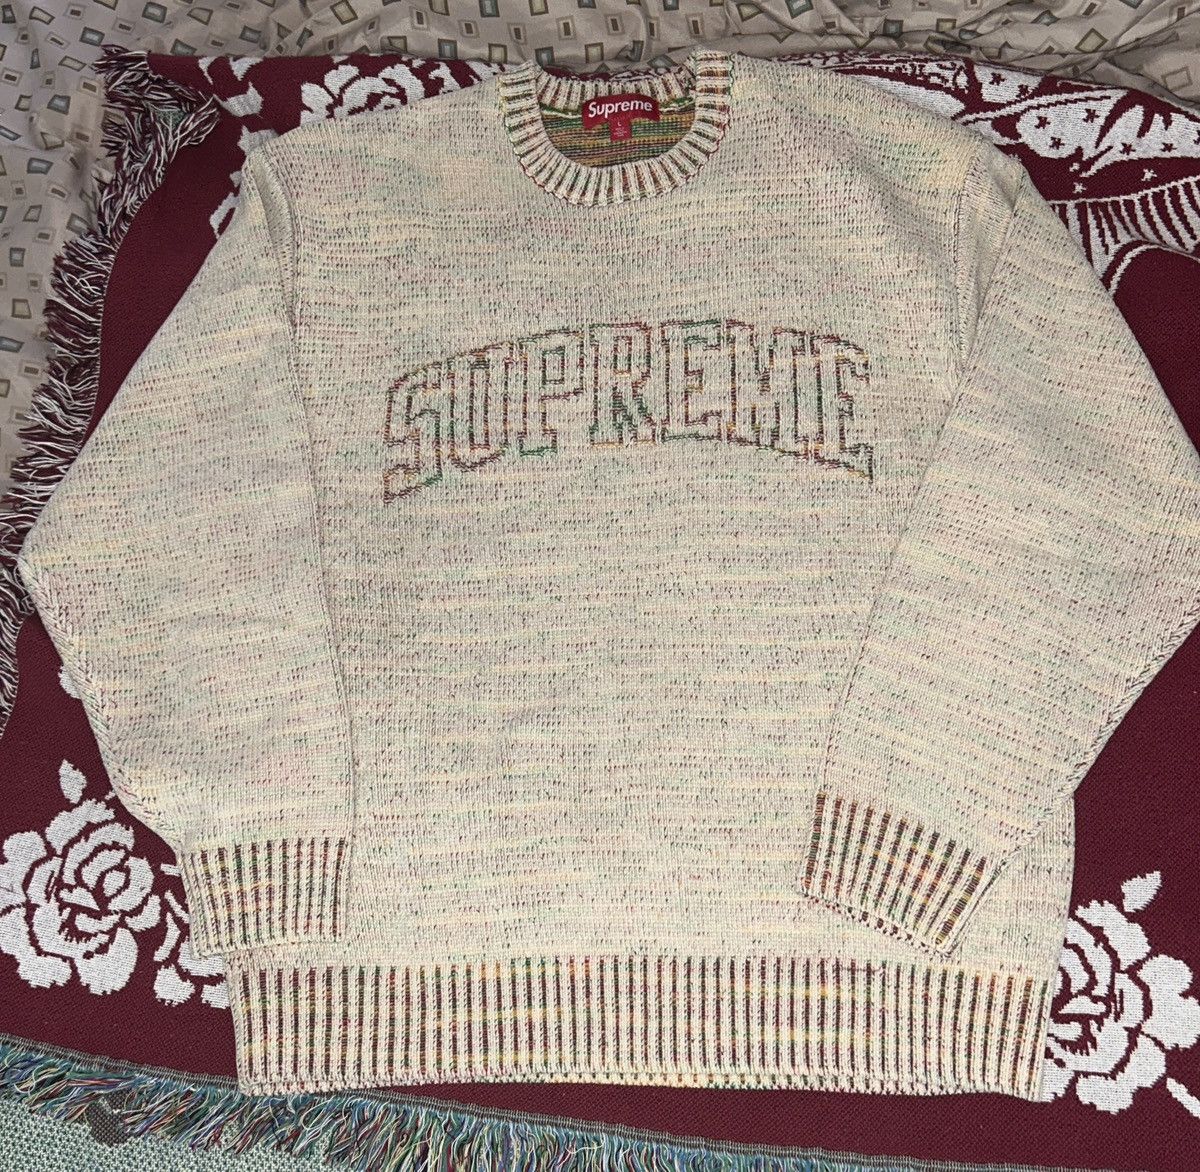 Supreme Supreme contrast arc sweater | Grailed